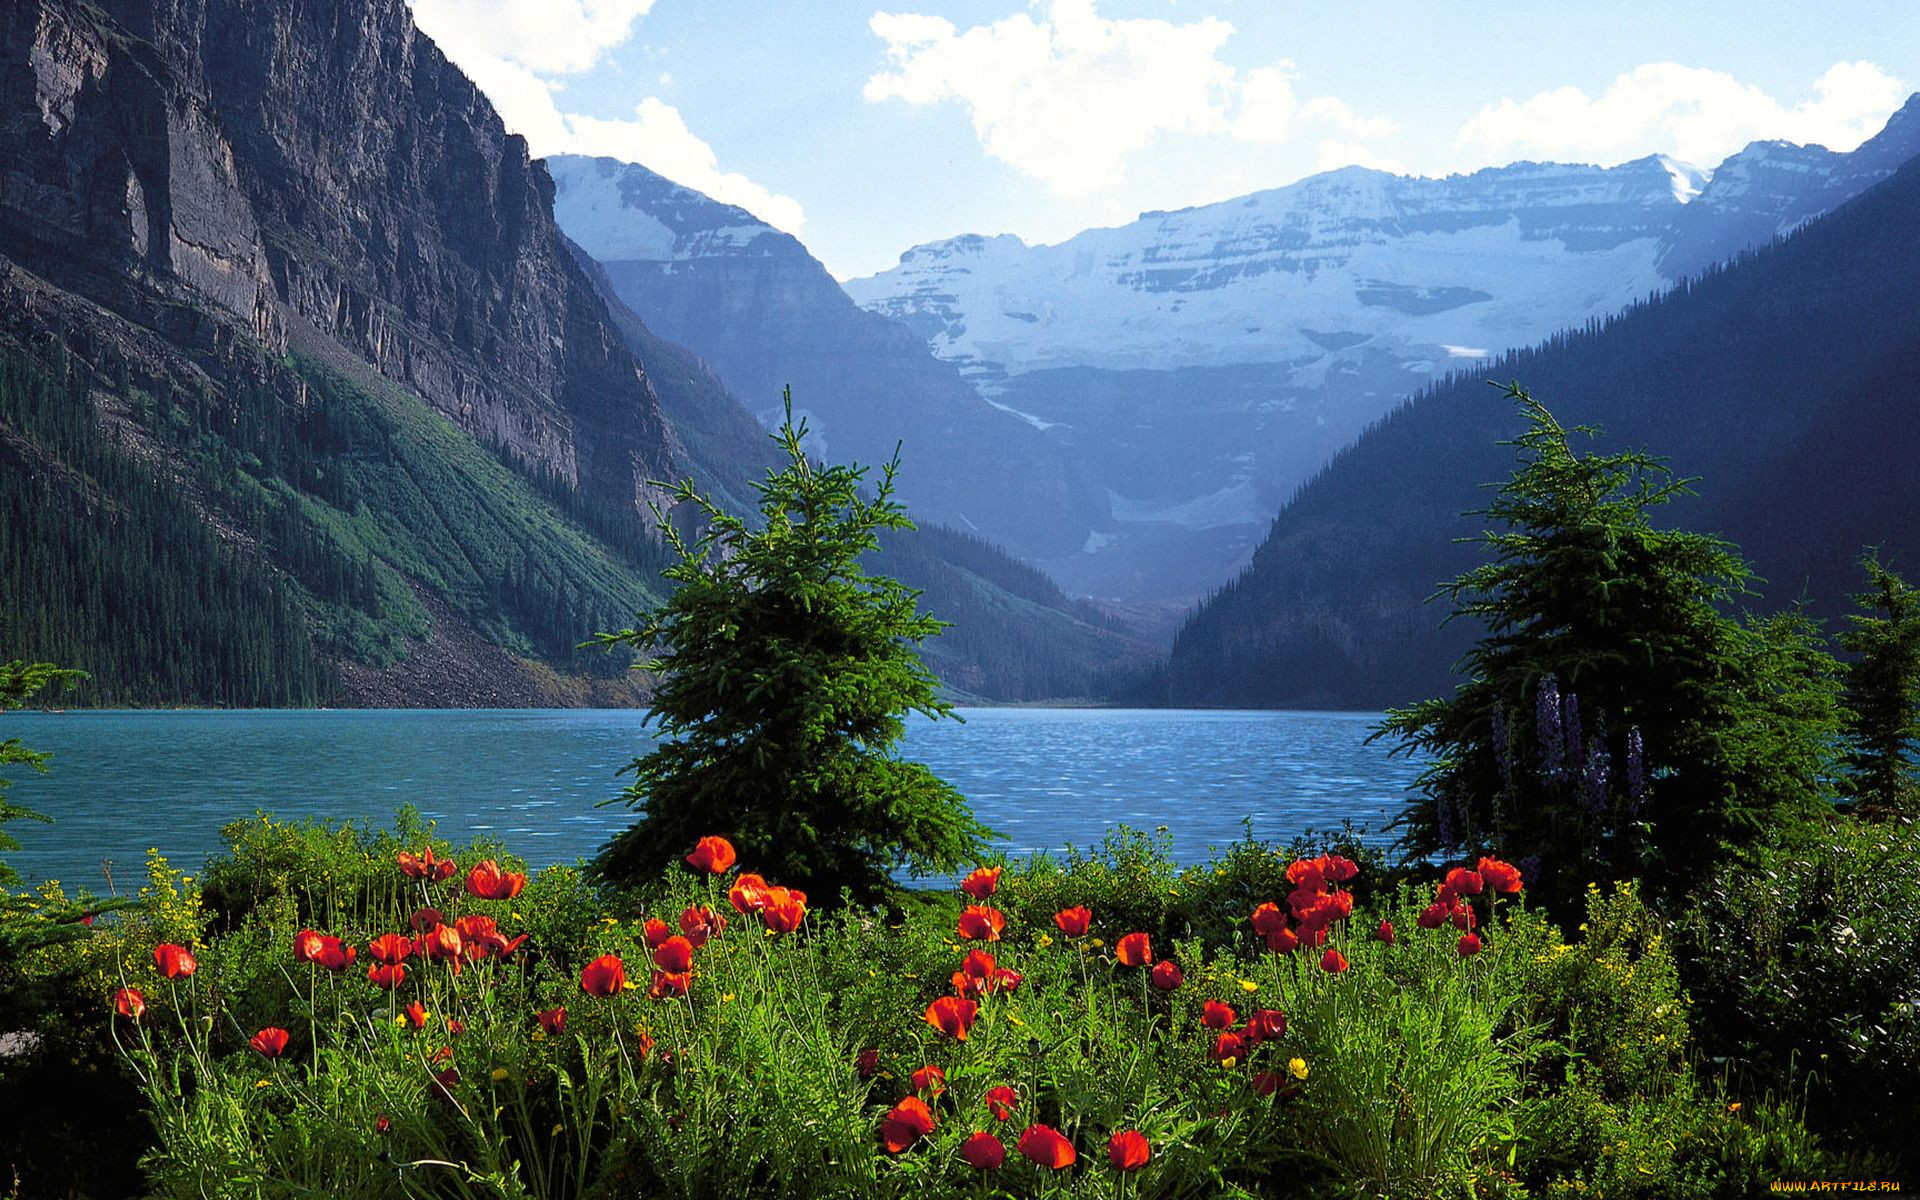 Какие красивые пейзажи. Цветы Канады Банф. Мультинские озера. Швейцария манзаралари.